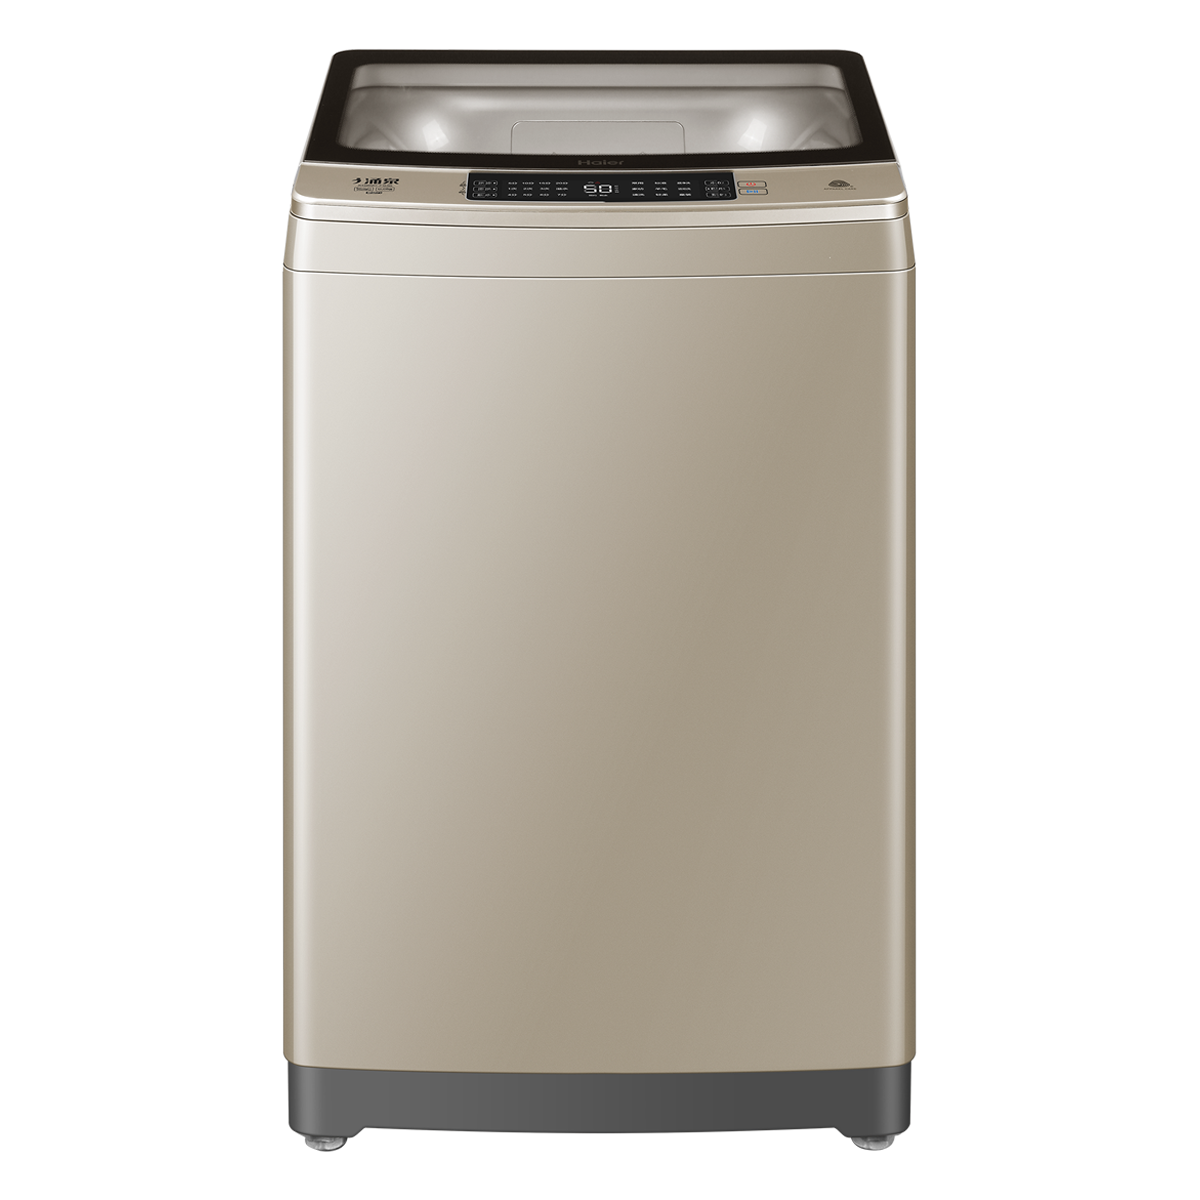 海尔Haier洗衣机 XQB90-F936 说明书